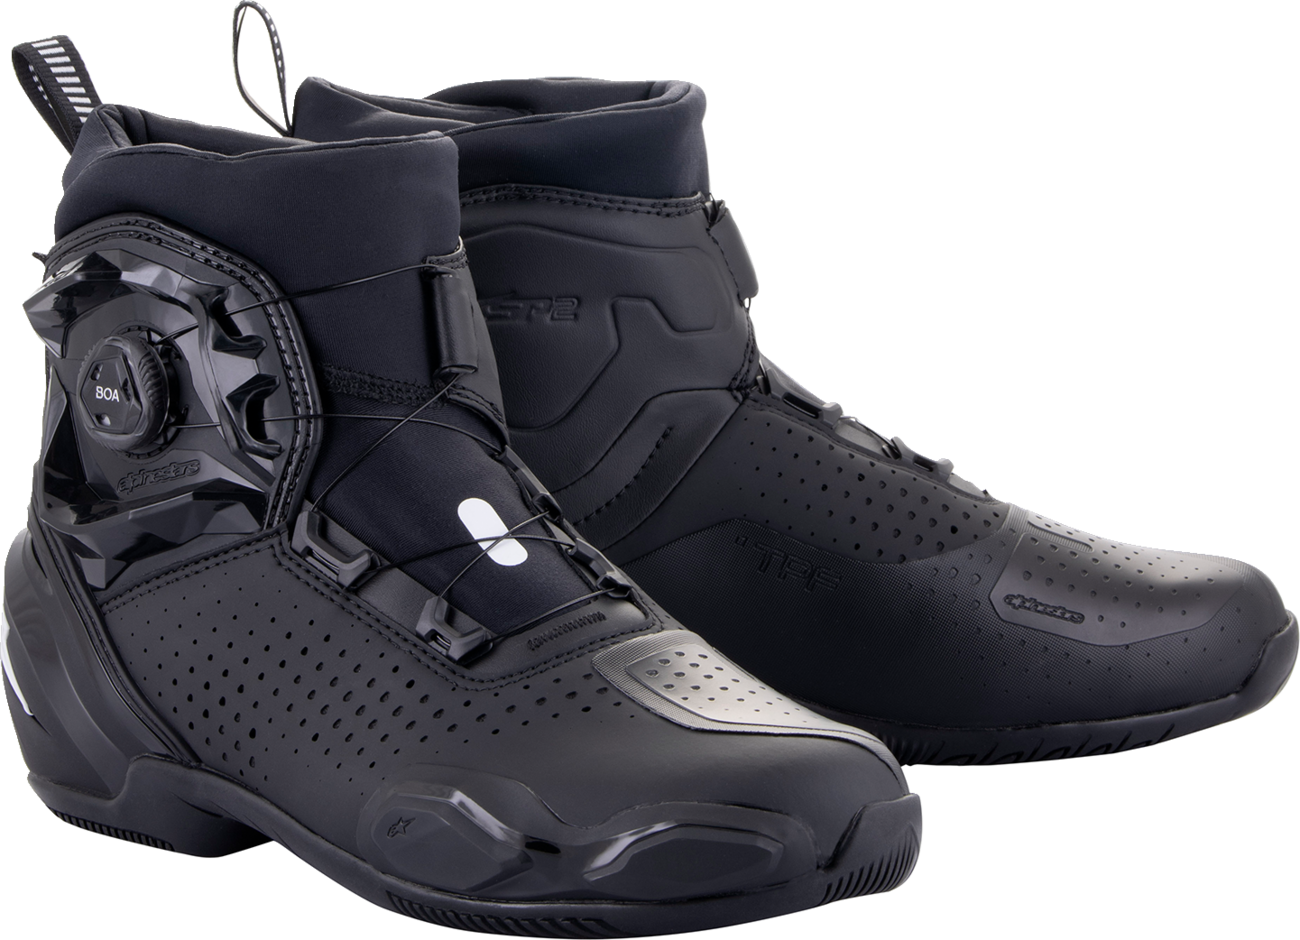 Zapatos ALPINESTARS SP-2 - Negro - US 6.5 / EU 40 2511622-10-40 